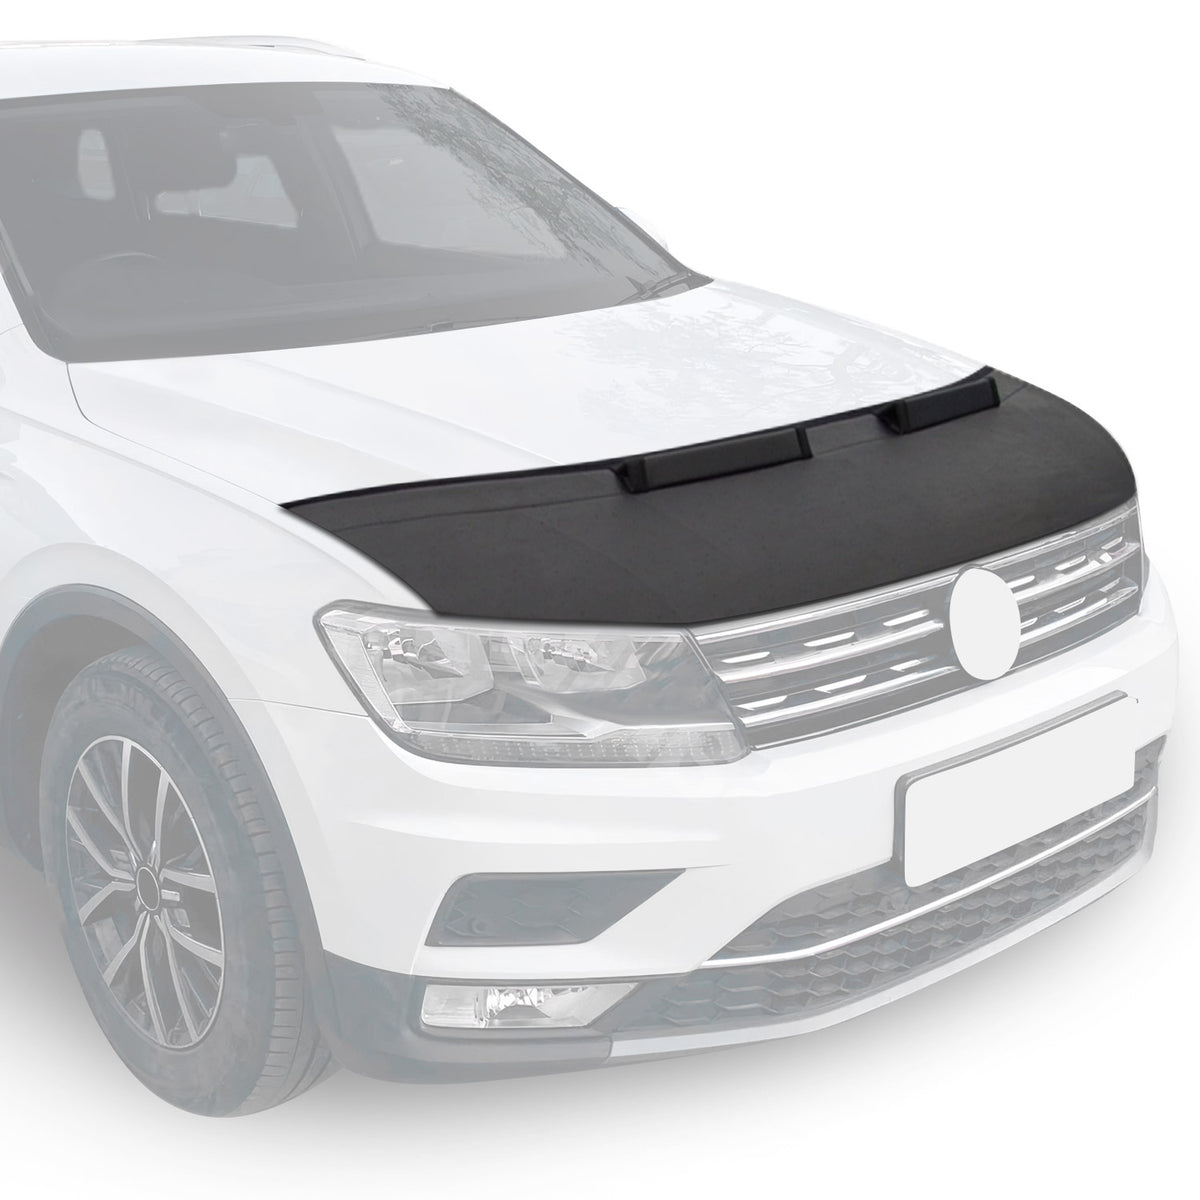 Für VW Golf VII 2012-2019 Bonnet Bra Steinschlagschutzmaske Schutzteile